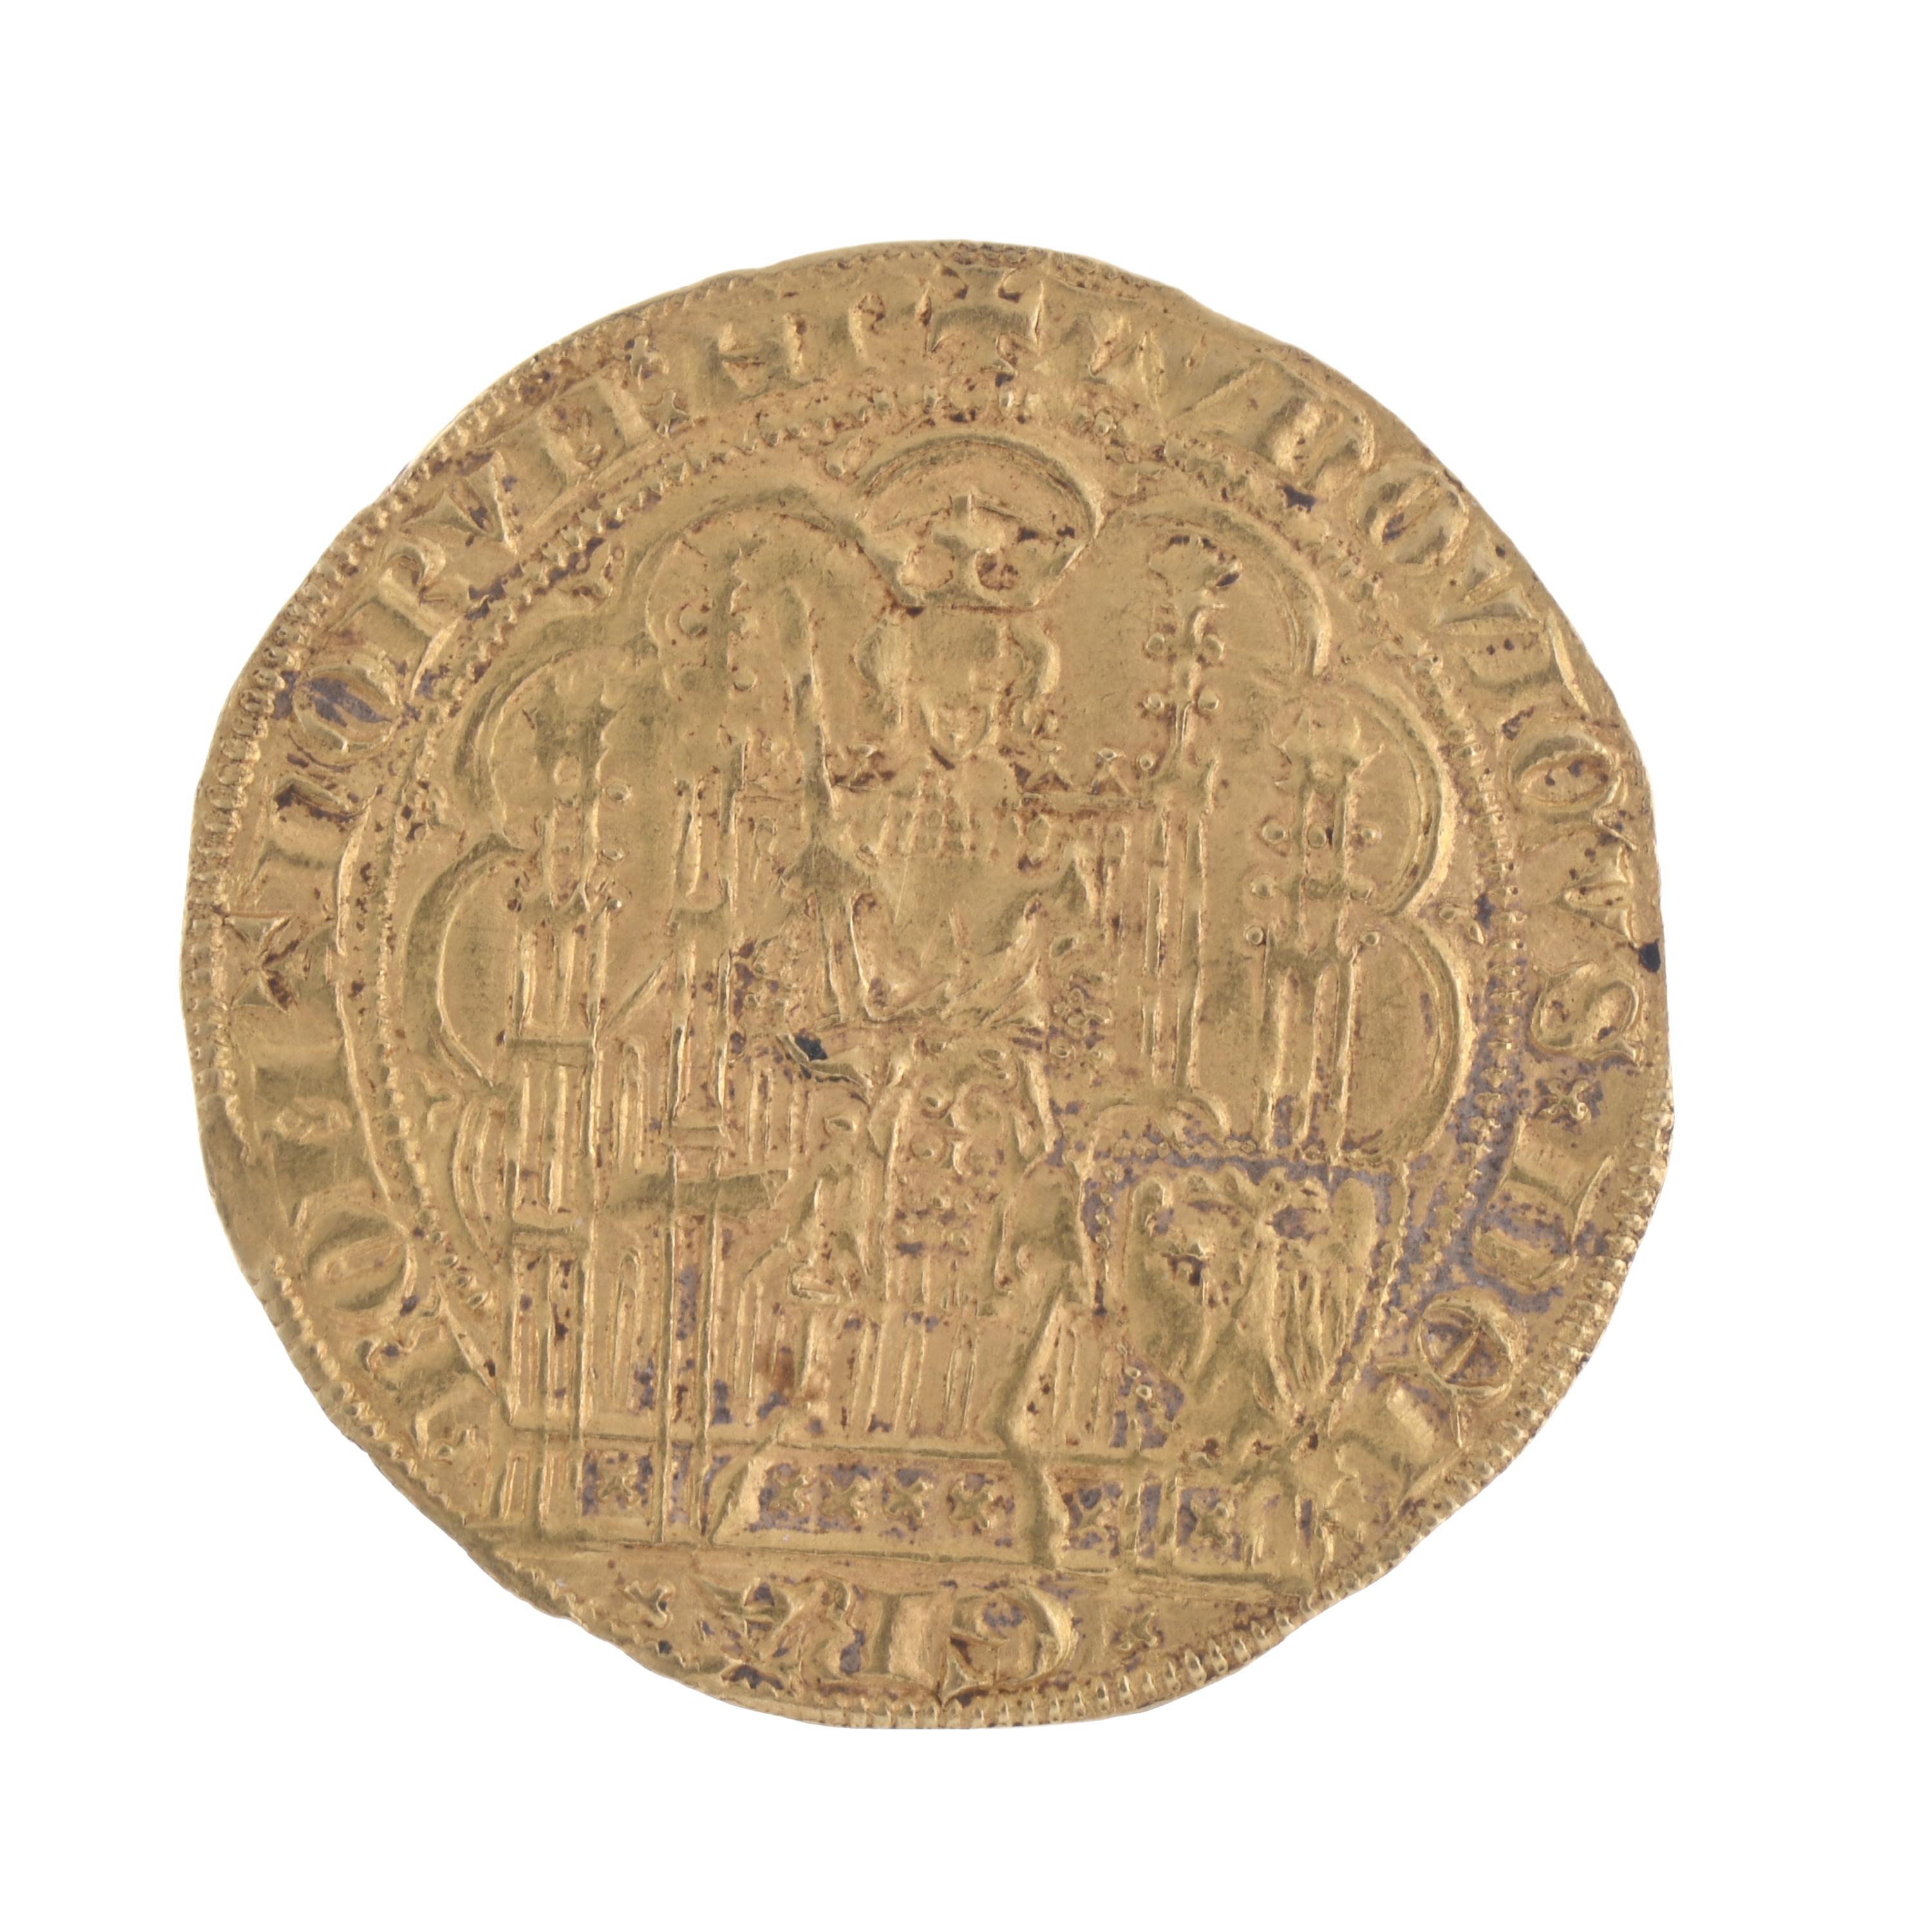 MONEDA PHILIPPE VI DE VALOIS.1328-1350.